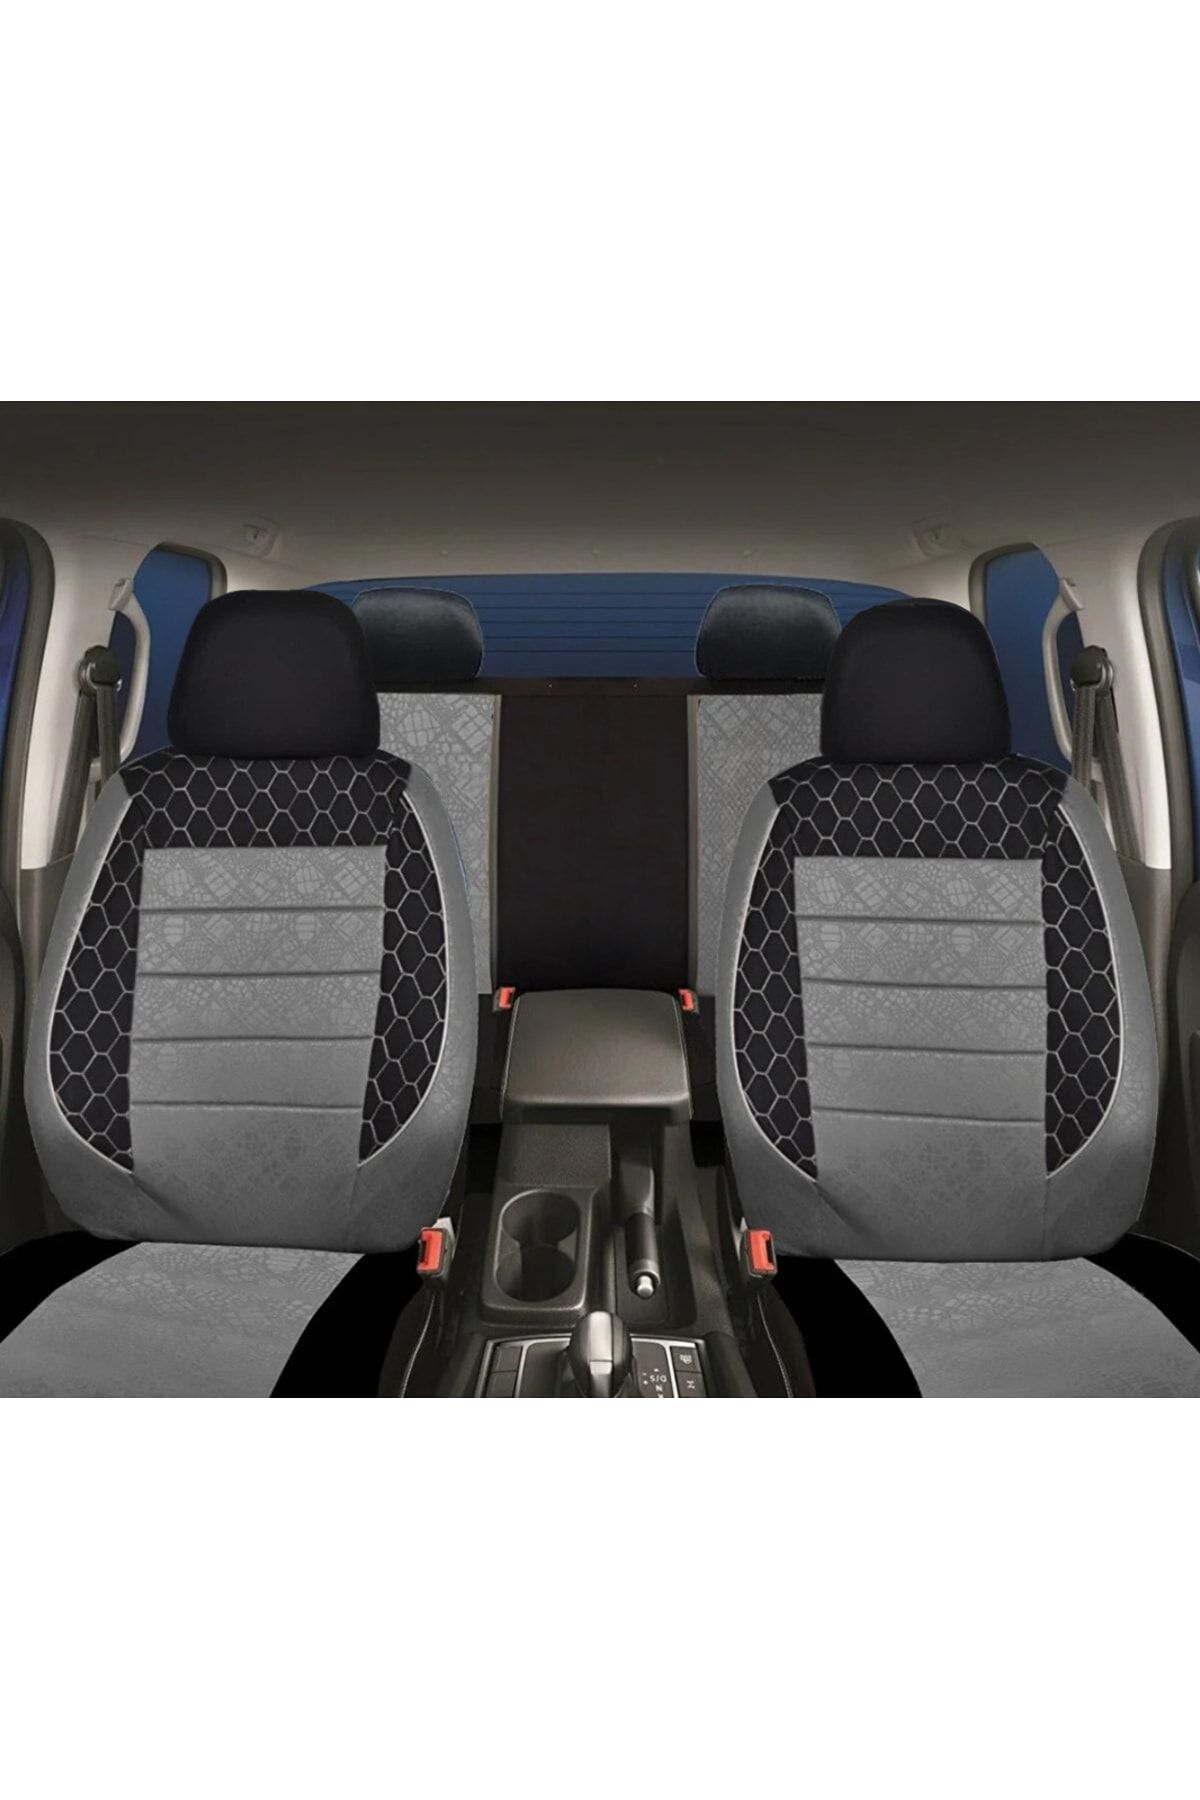 BTİC Fiat Fiorino Universal Oto Koltuk Kılıfı Oto Araç kılıf Tam Set 2 Adet Yastık hediyeli